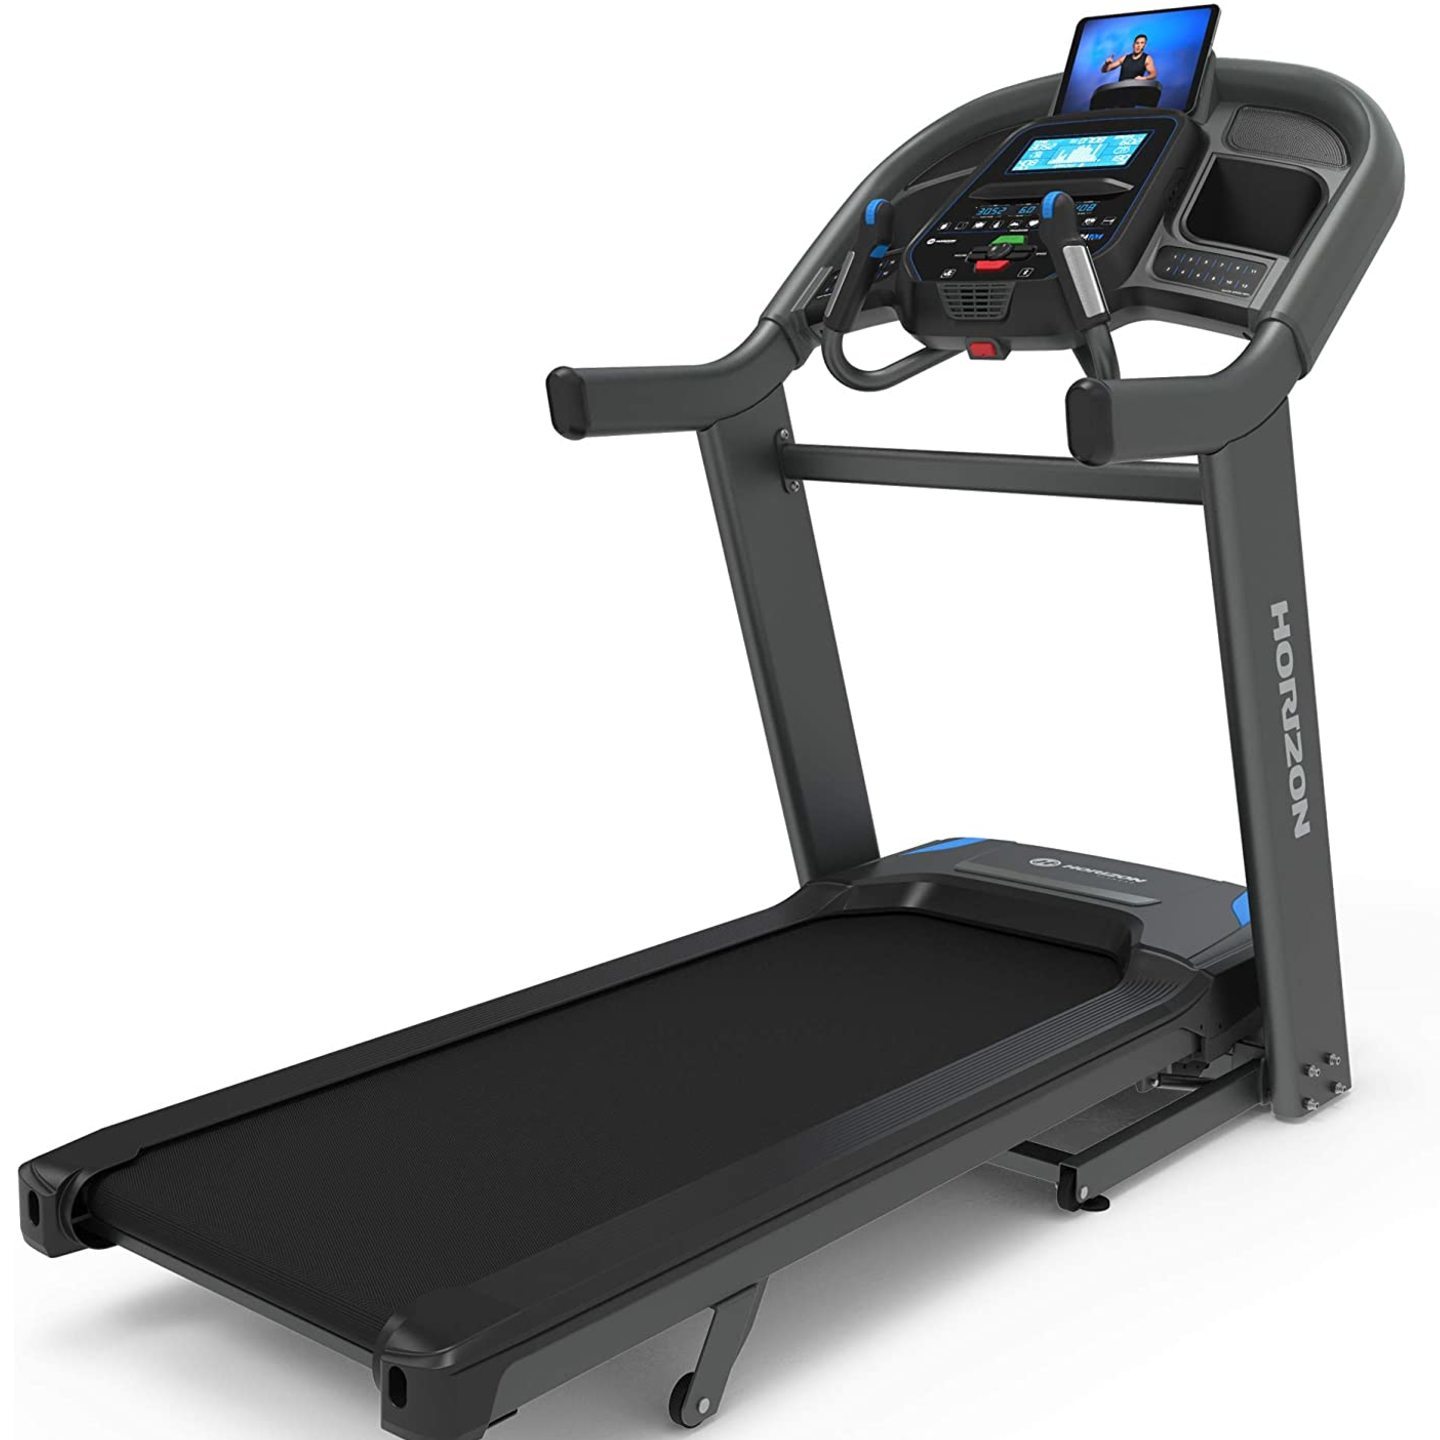 Horizon Treadmill 7.4